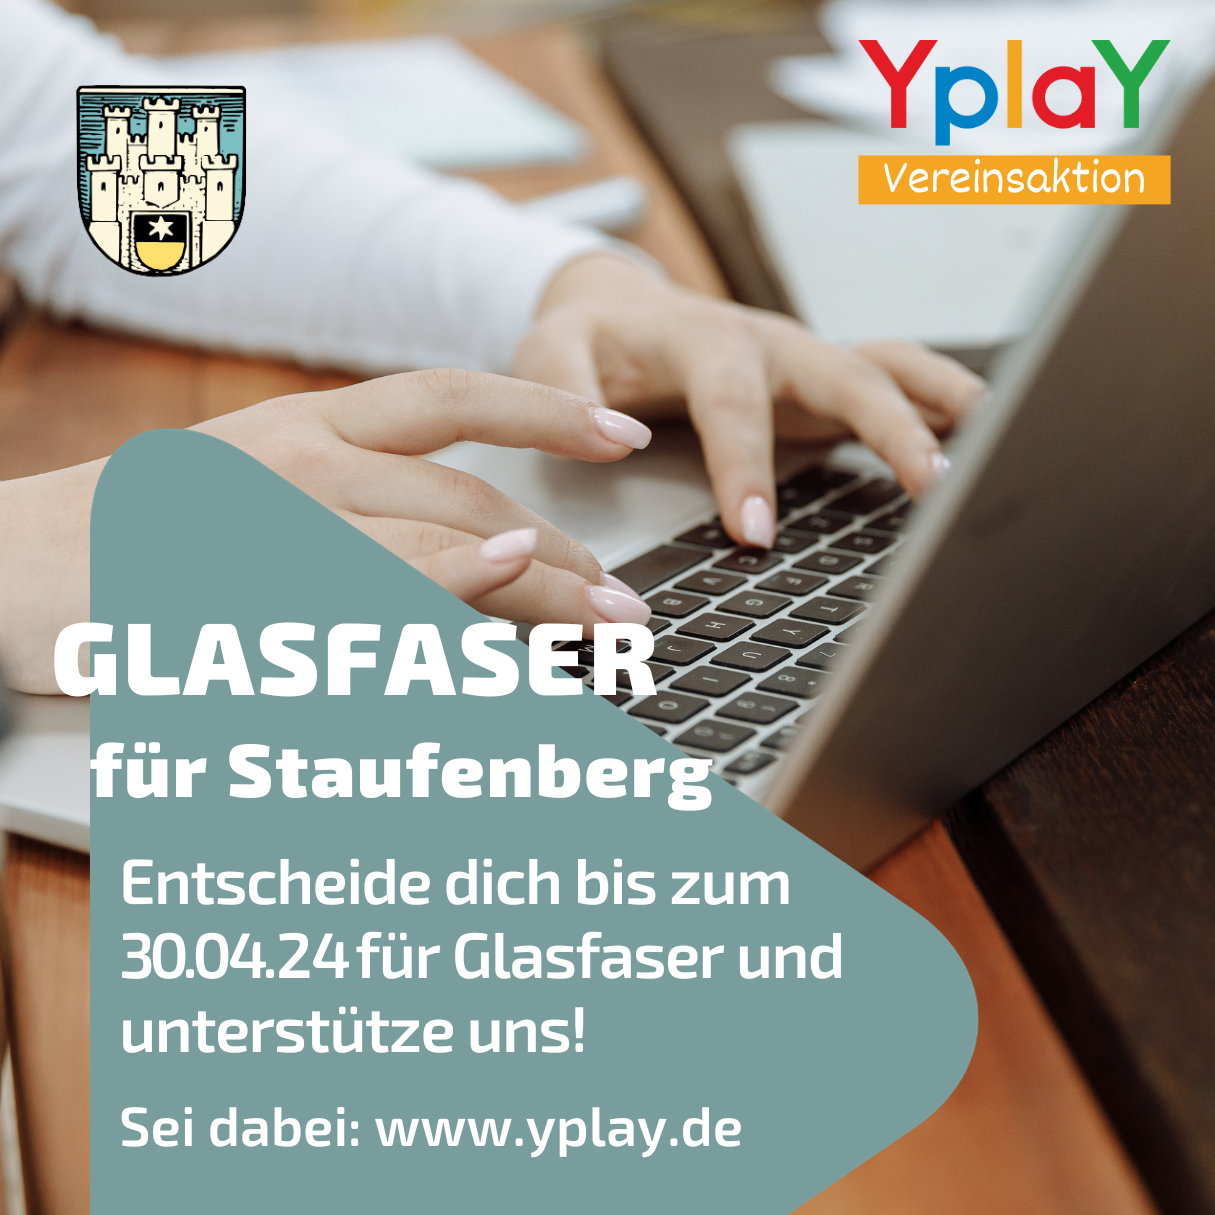 Yplay Vereinsaktion HV-Staufenberg